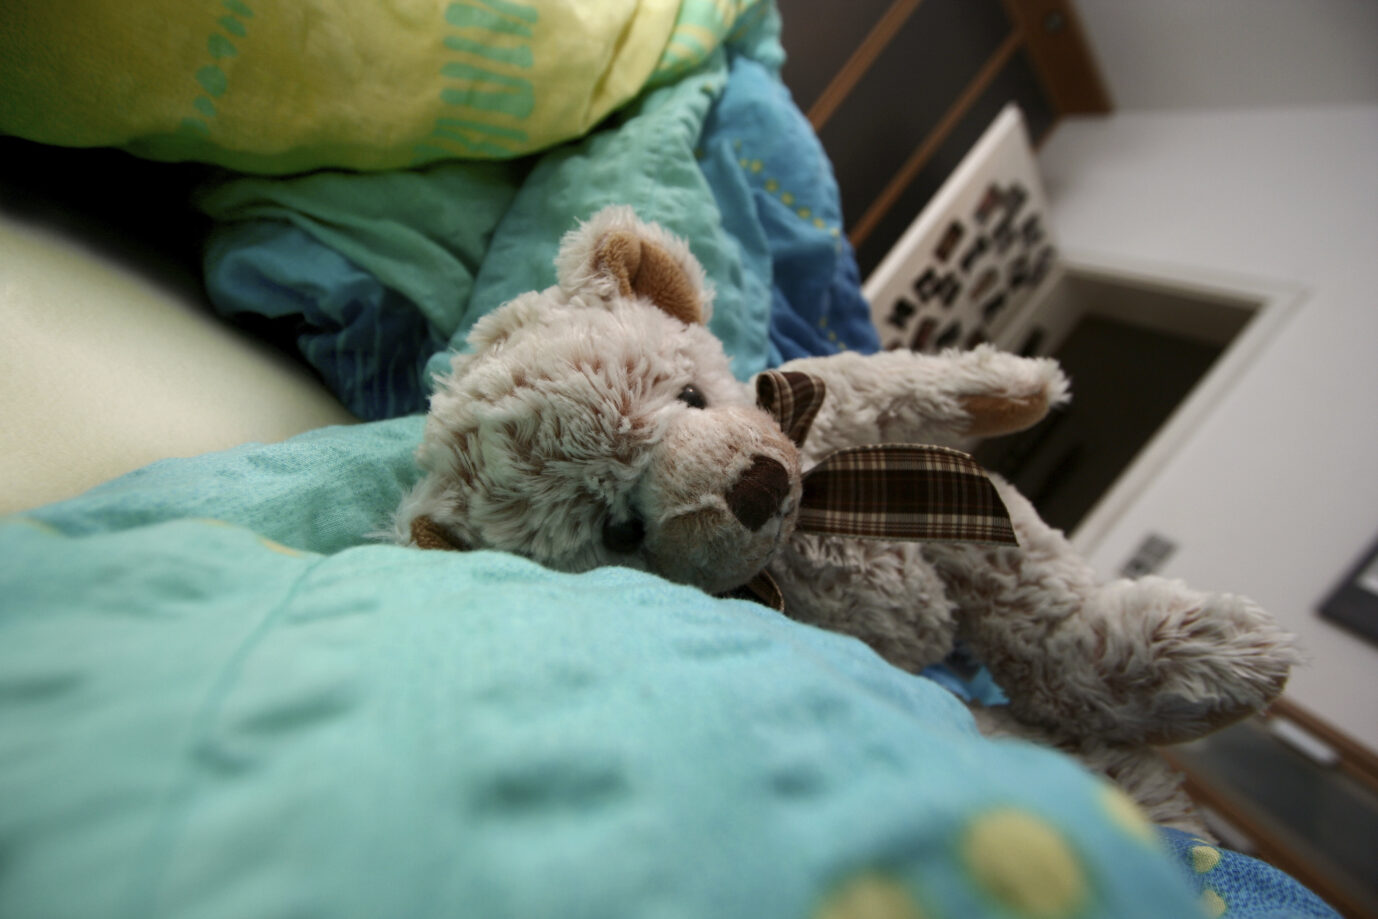 Teddybär in einem Bett: Der Psychologe Helmut Kentler verging sich an seinen Adoptivsöhnen und bediente ein Pädophilen-Netzwerk